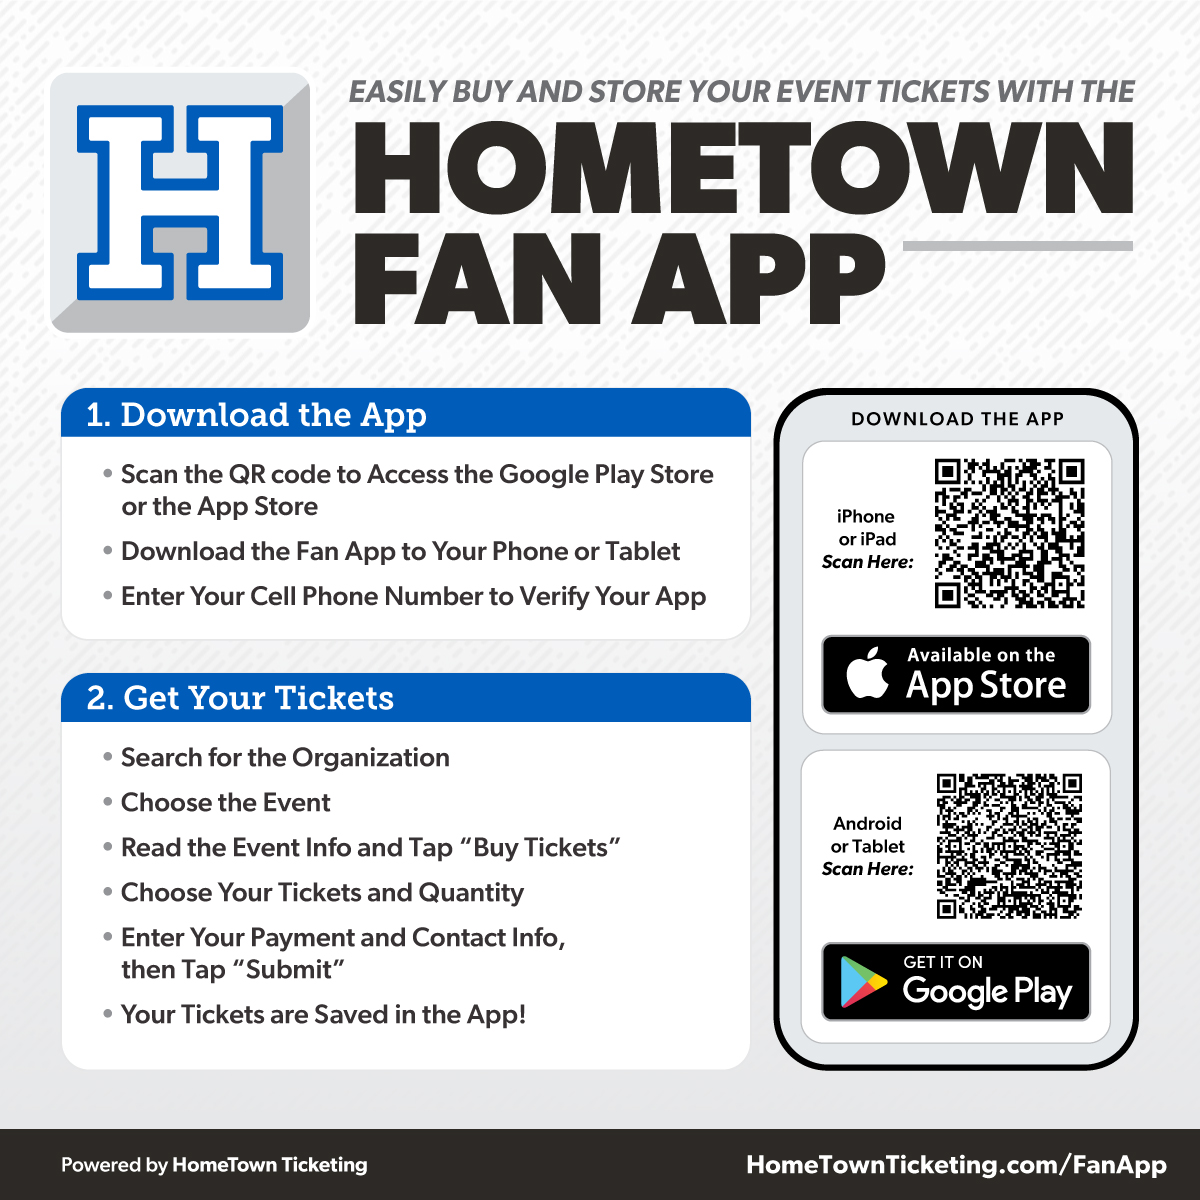 HomeTown fan app download instructions